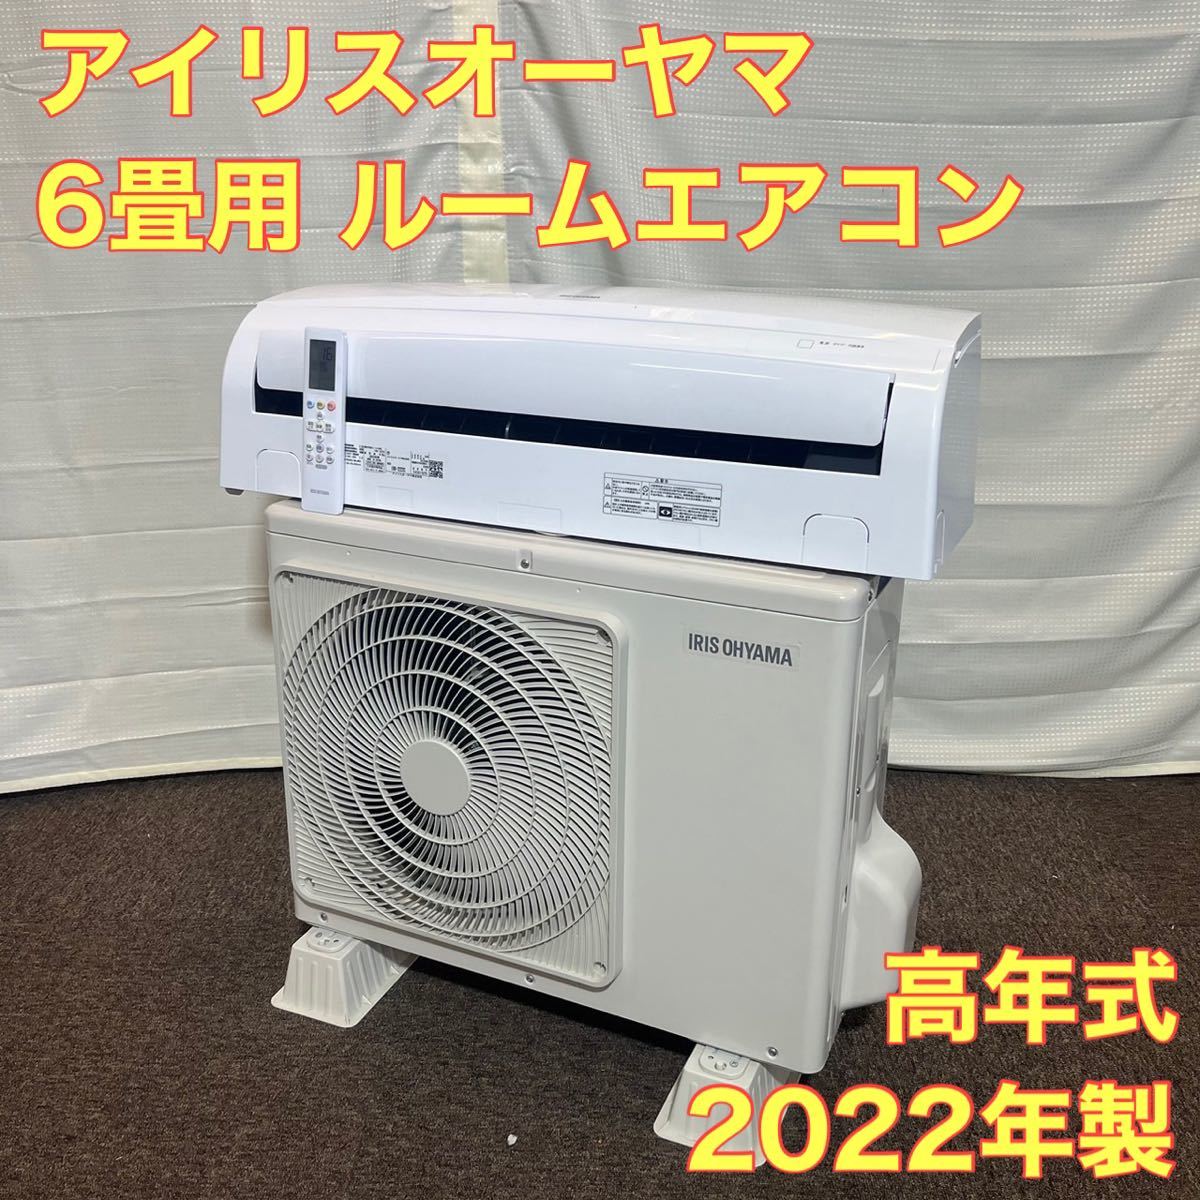 アイリスオーヤマ IRR-2222 エアコン 6畳 2022年製 A0107-